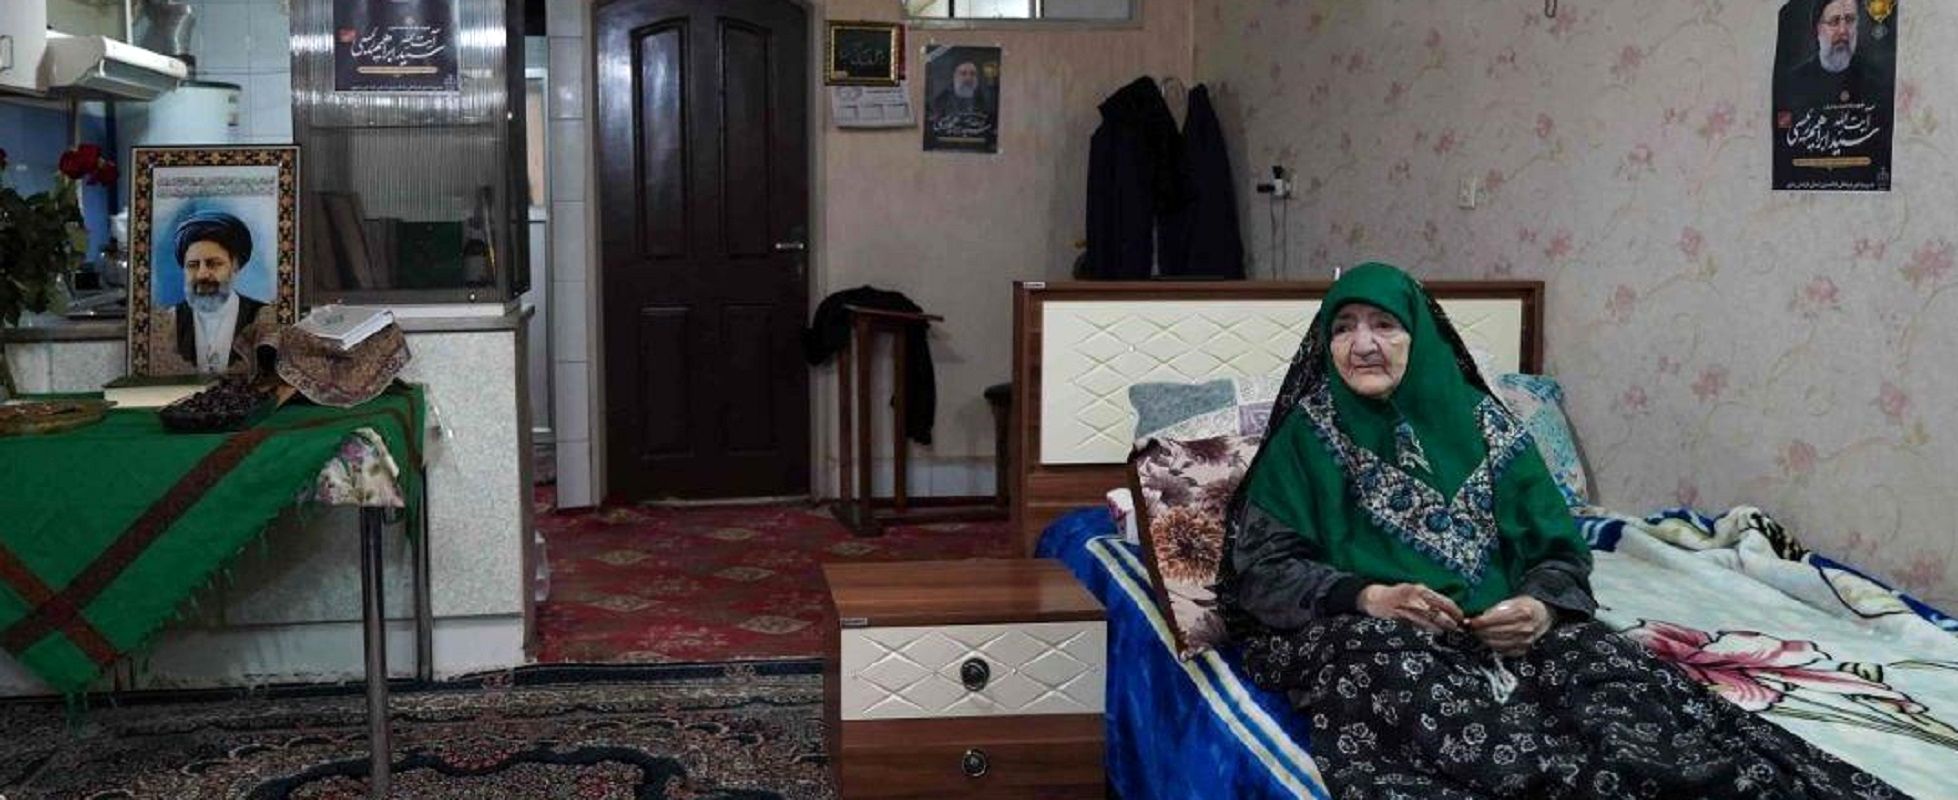 شعر افشین علا برای مادر رئیس جمهور + عکس های تازه از مادر داغدار ابراهیم رئیسی